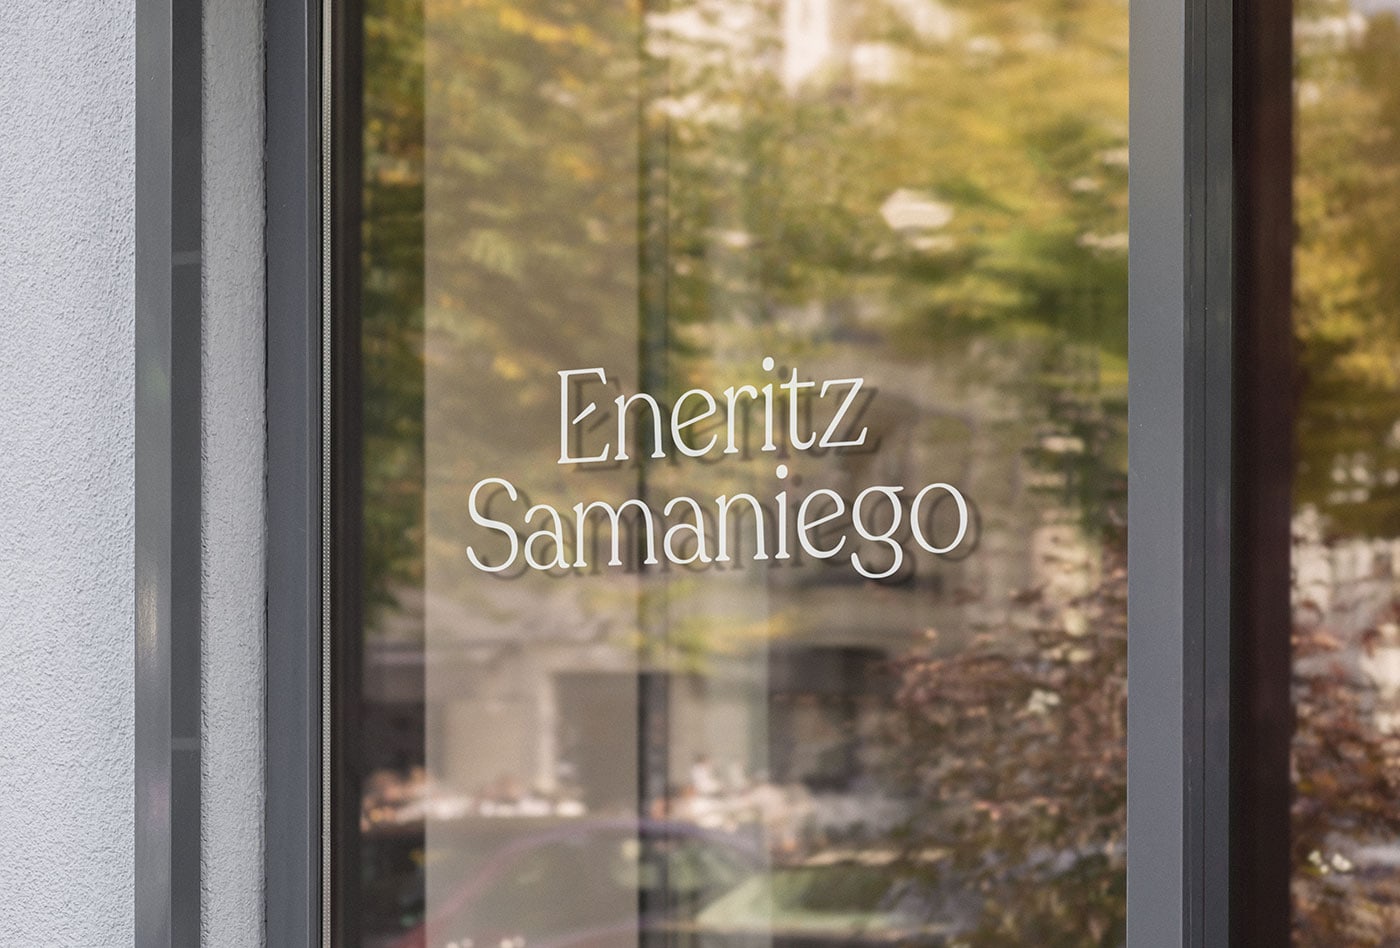 Eneritz Samaniego花店视觉识别和品牌设计